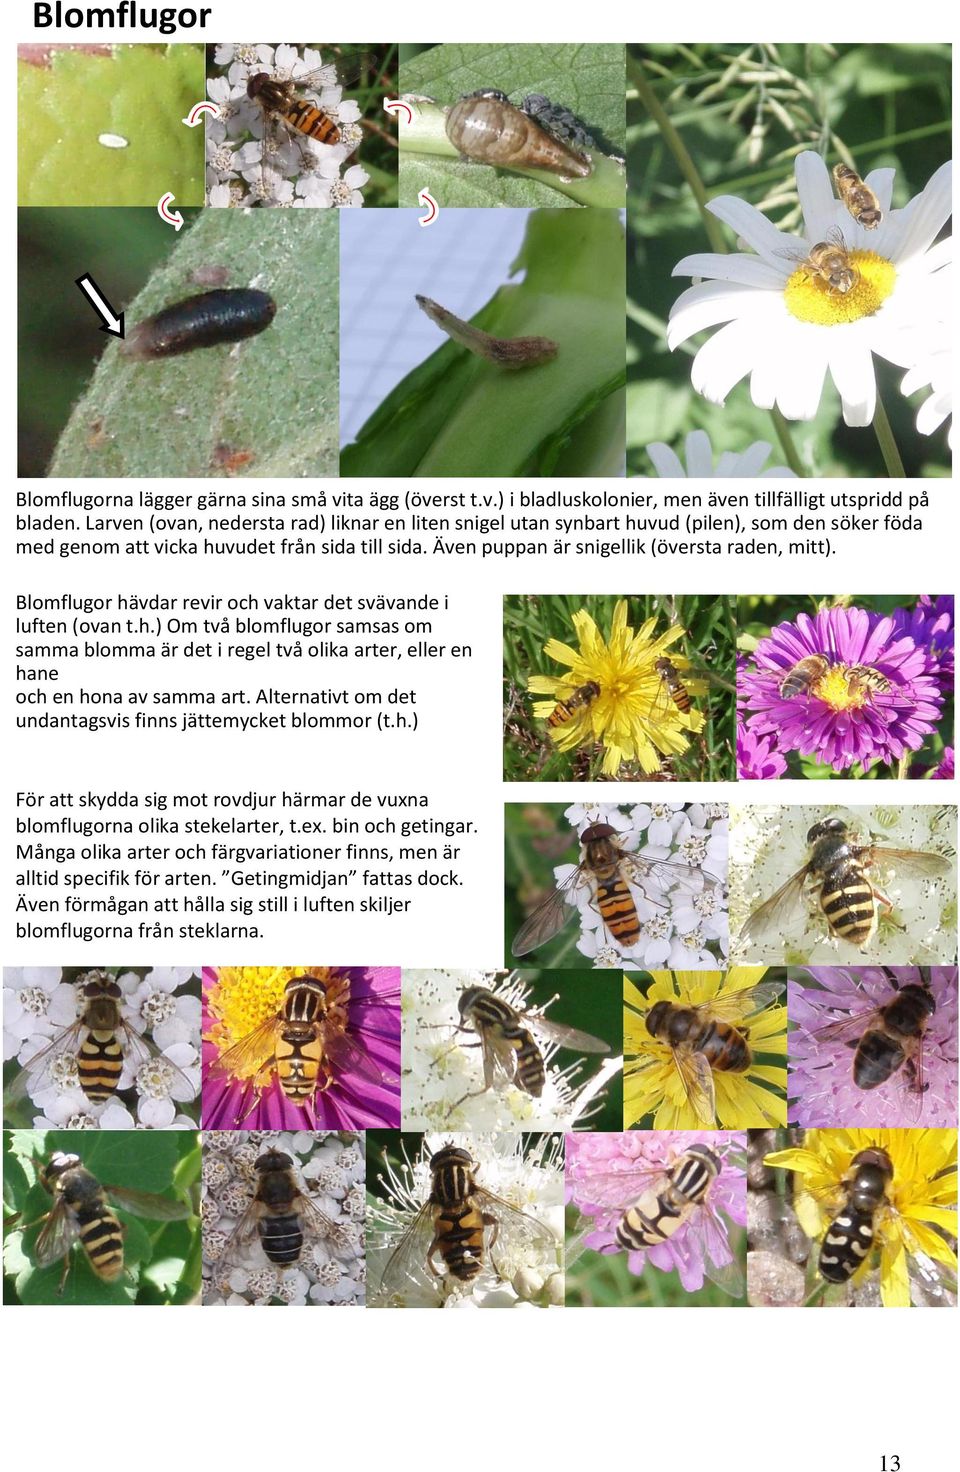 Blomflugor hävdar revir och vaktar det svävande i luften (ovan t.h.) Om två blomflugor samsas om samma blomma är det i regel två olika arter, eller en hane och en hona av samma art.